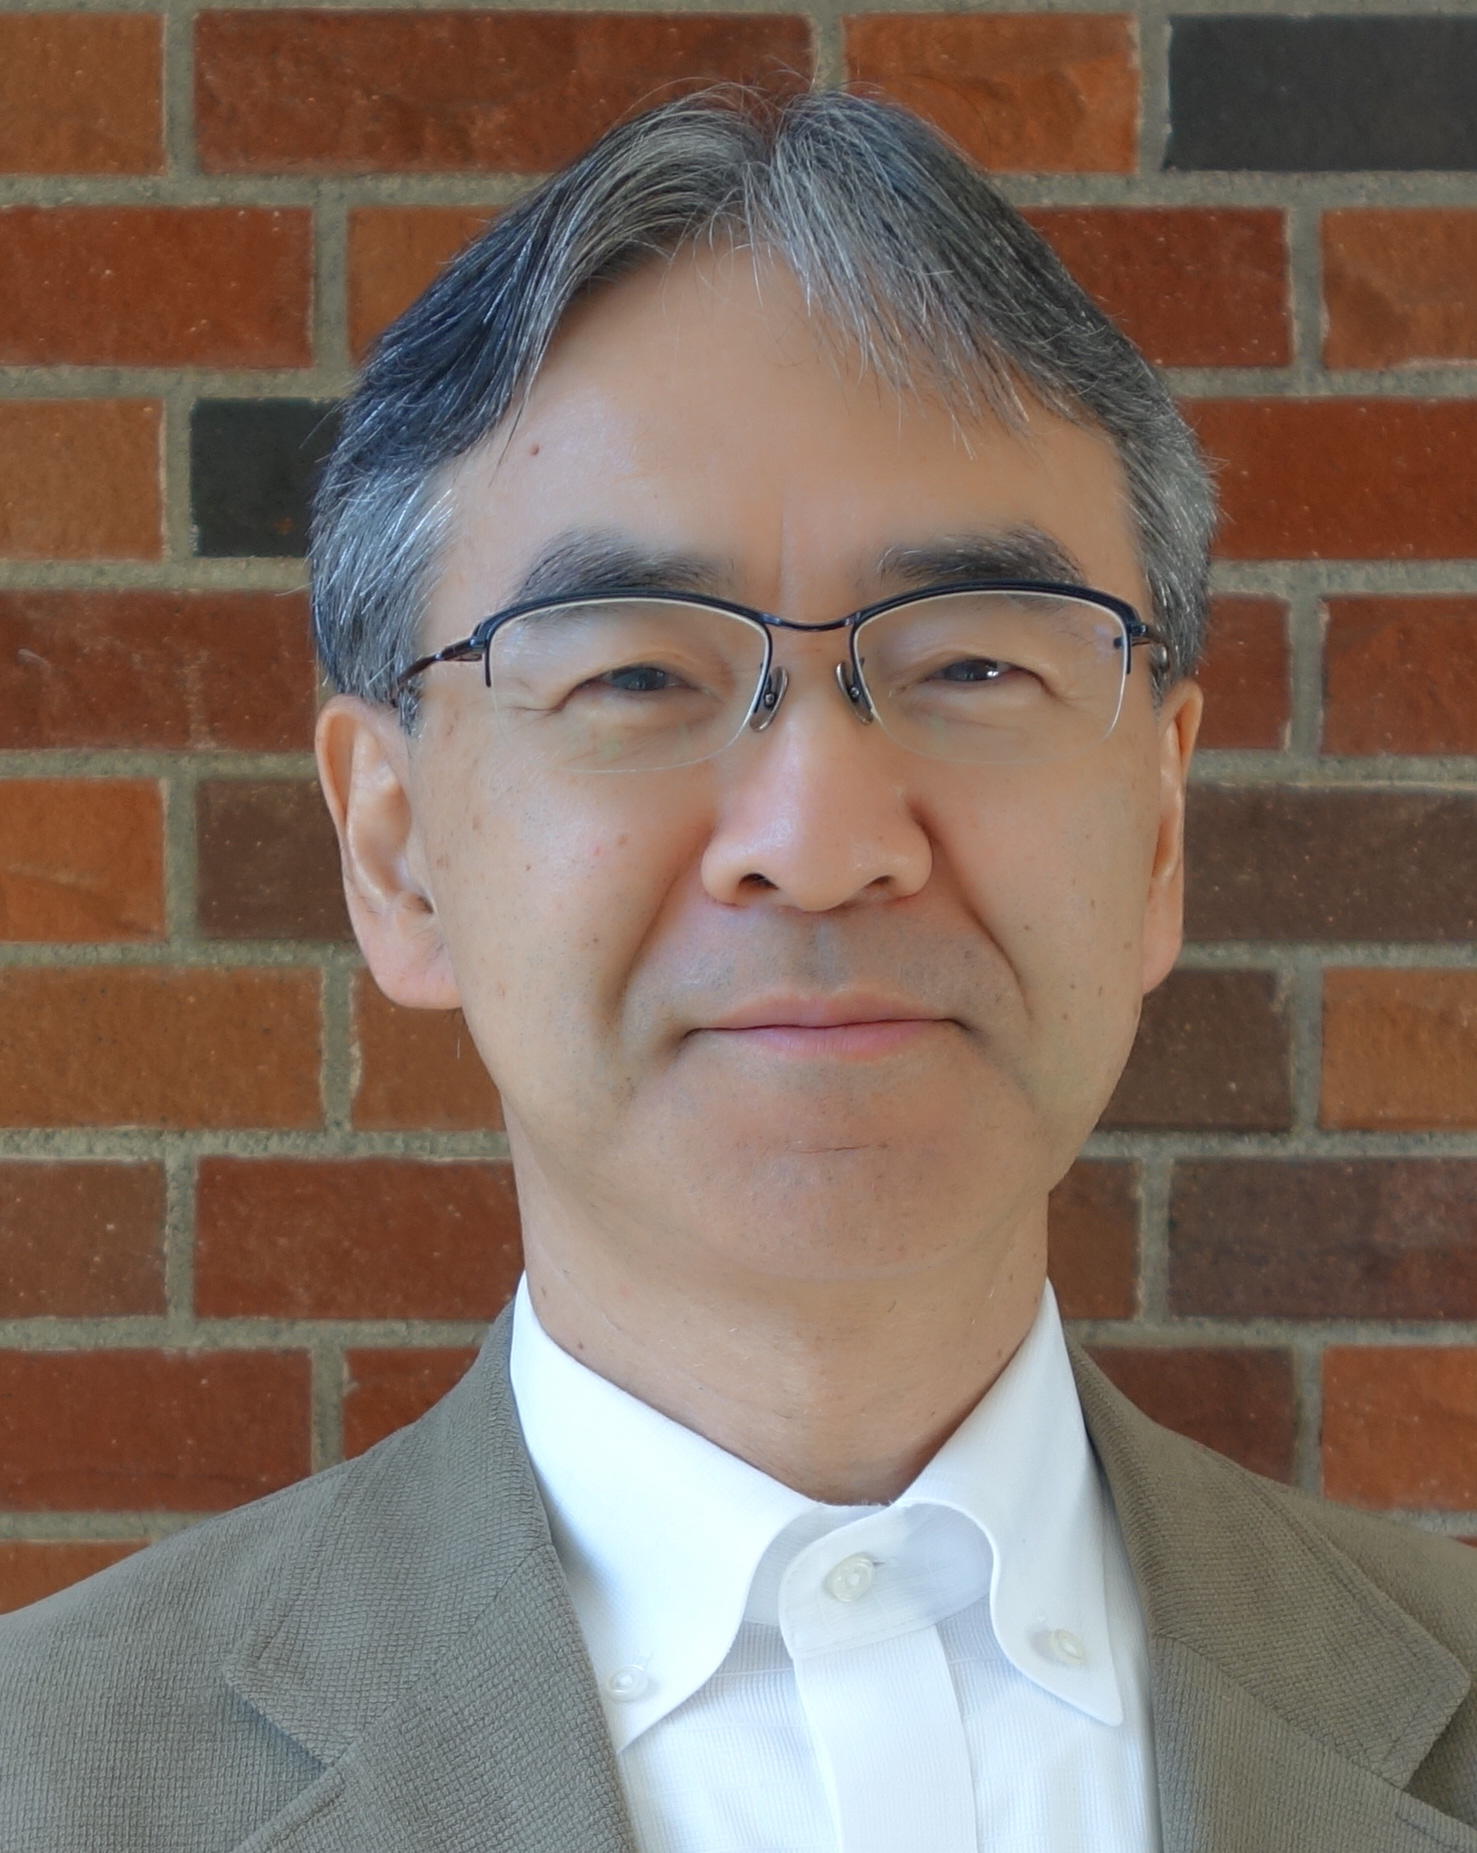 Takashi Suganuma